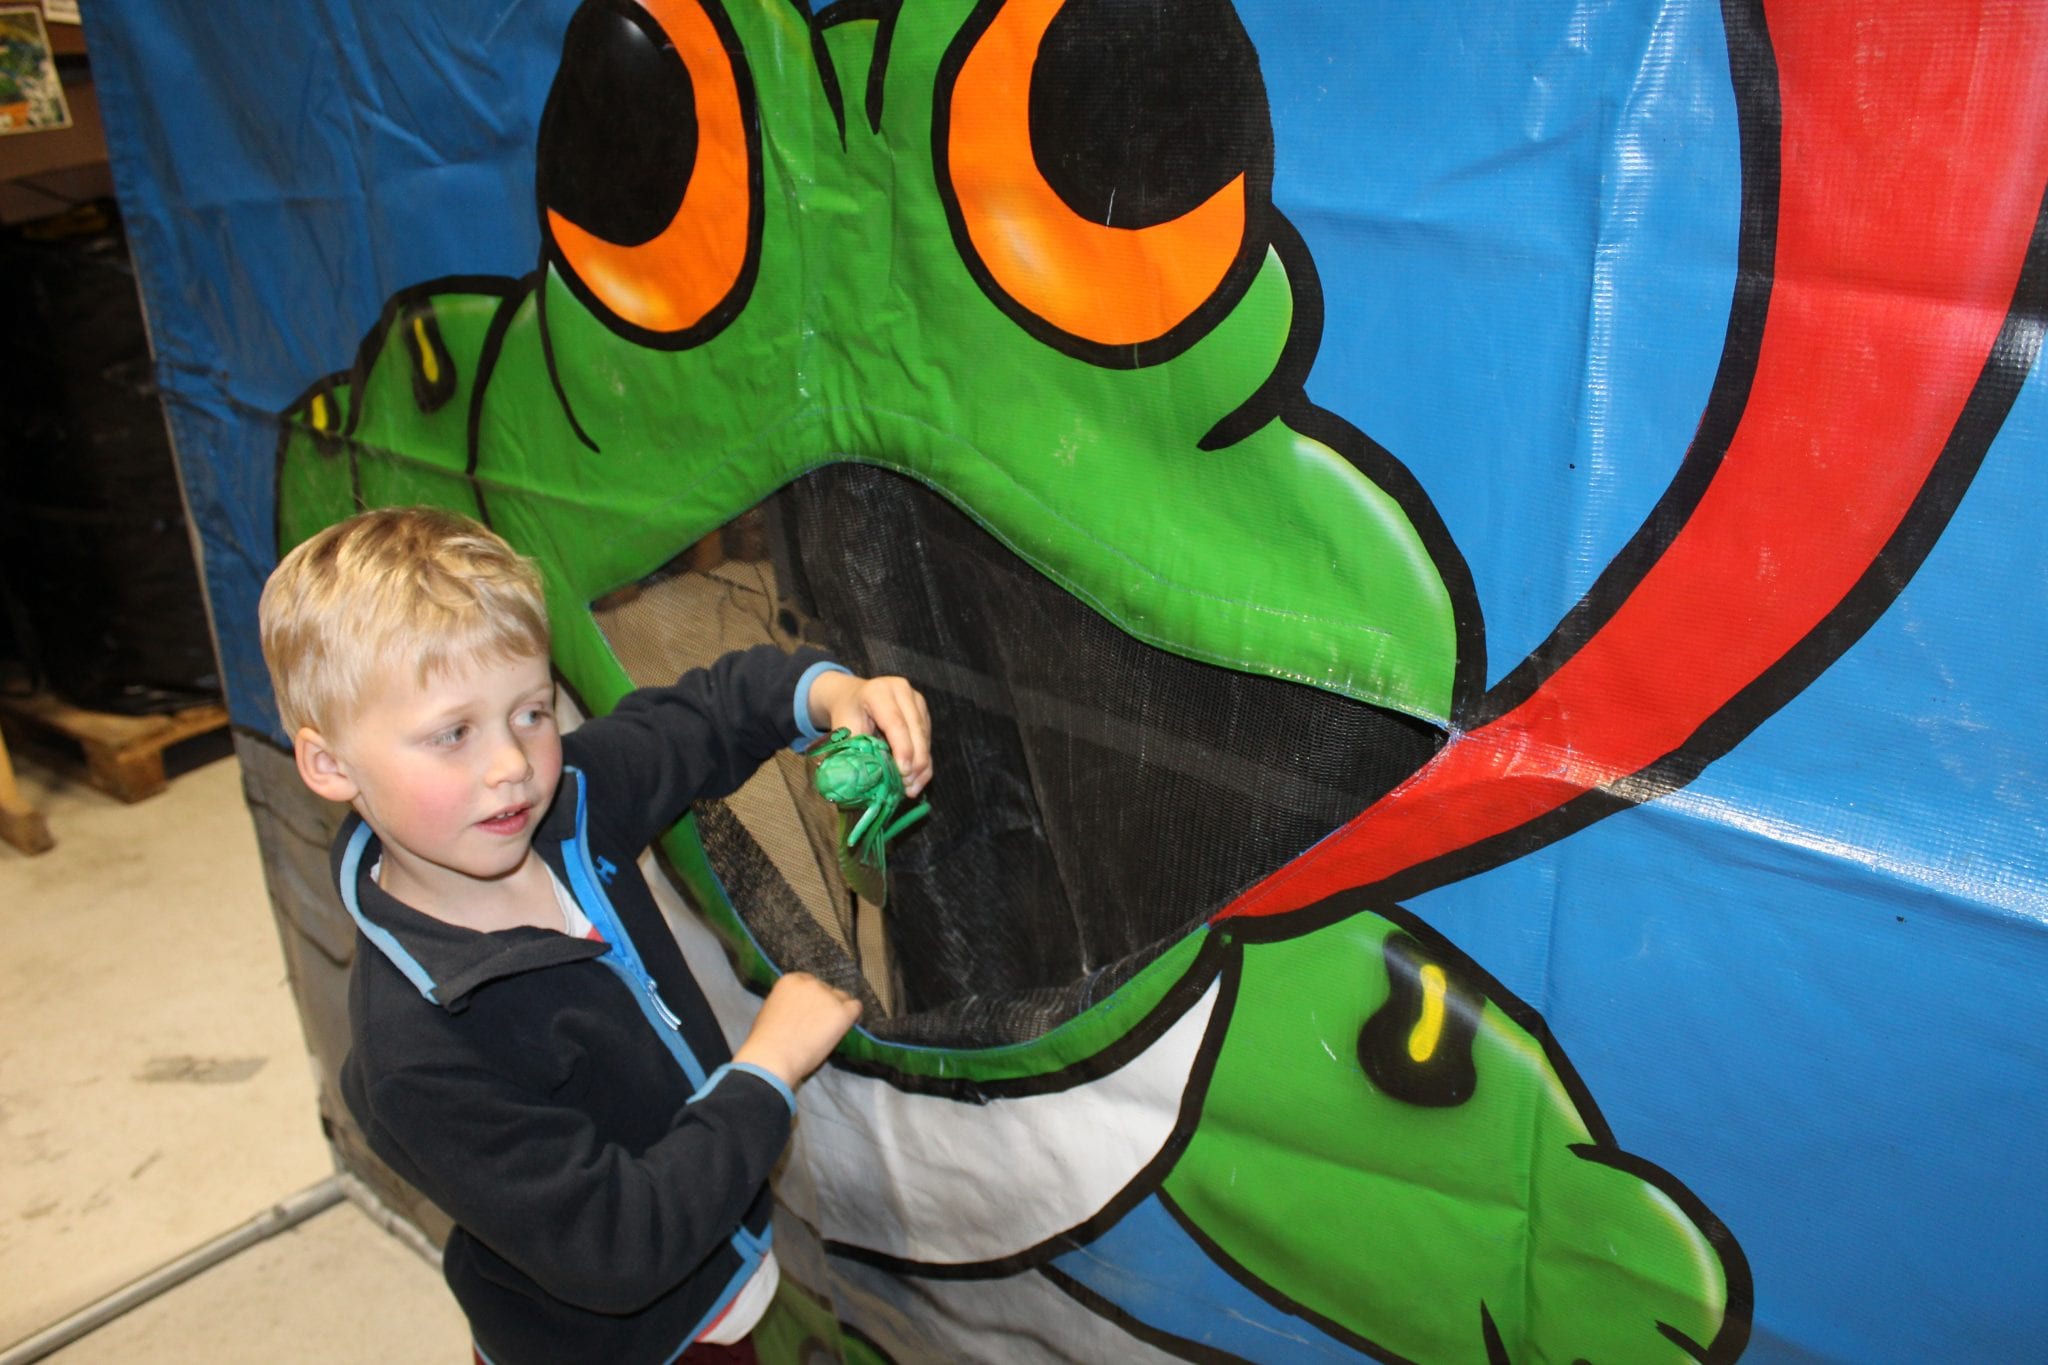 En nyhet i vårt Gammeldags Tivoli, der barna skal forsøke å mate frosken med store, skumle innsekter.

Se video